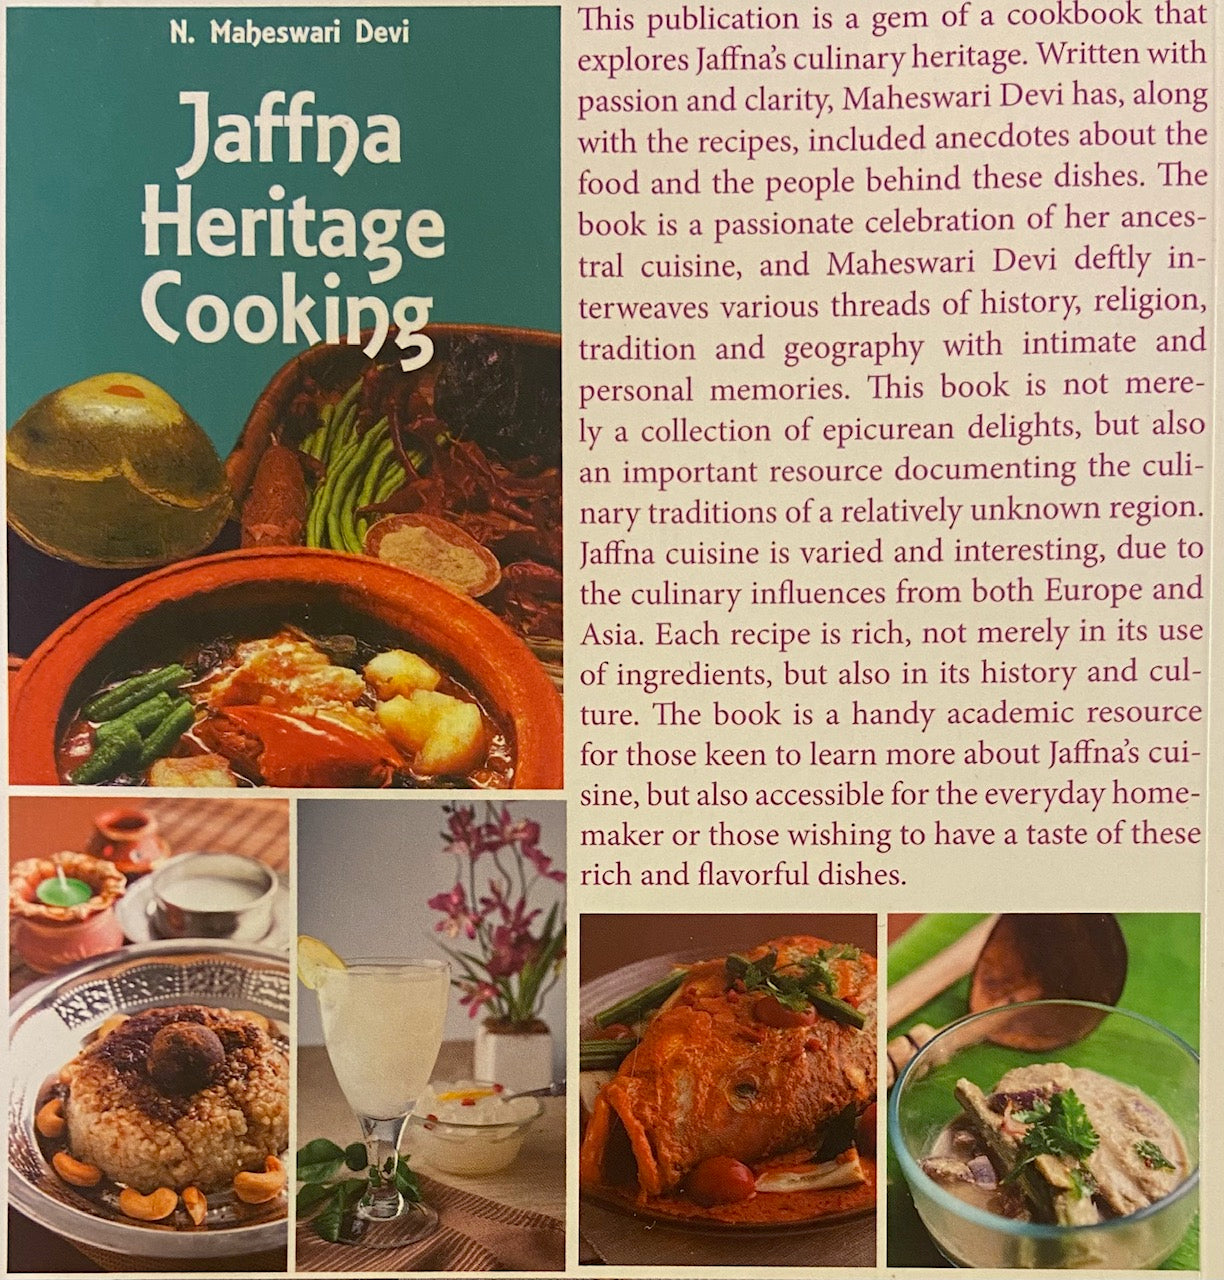 Jaffna Heritage Cooking by N Maheshwari Devi